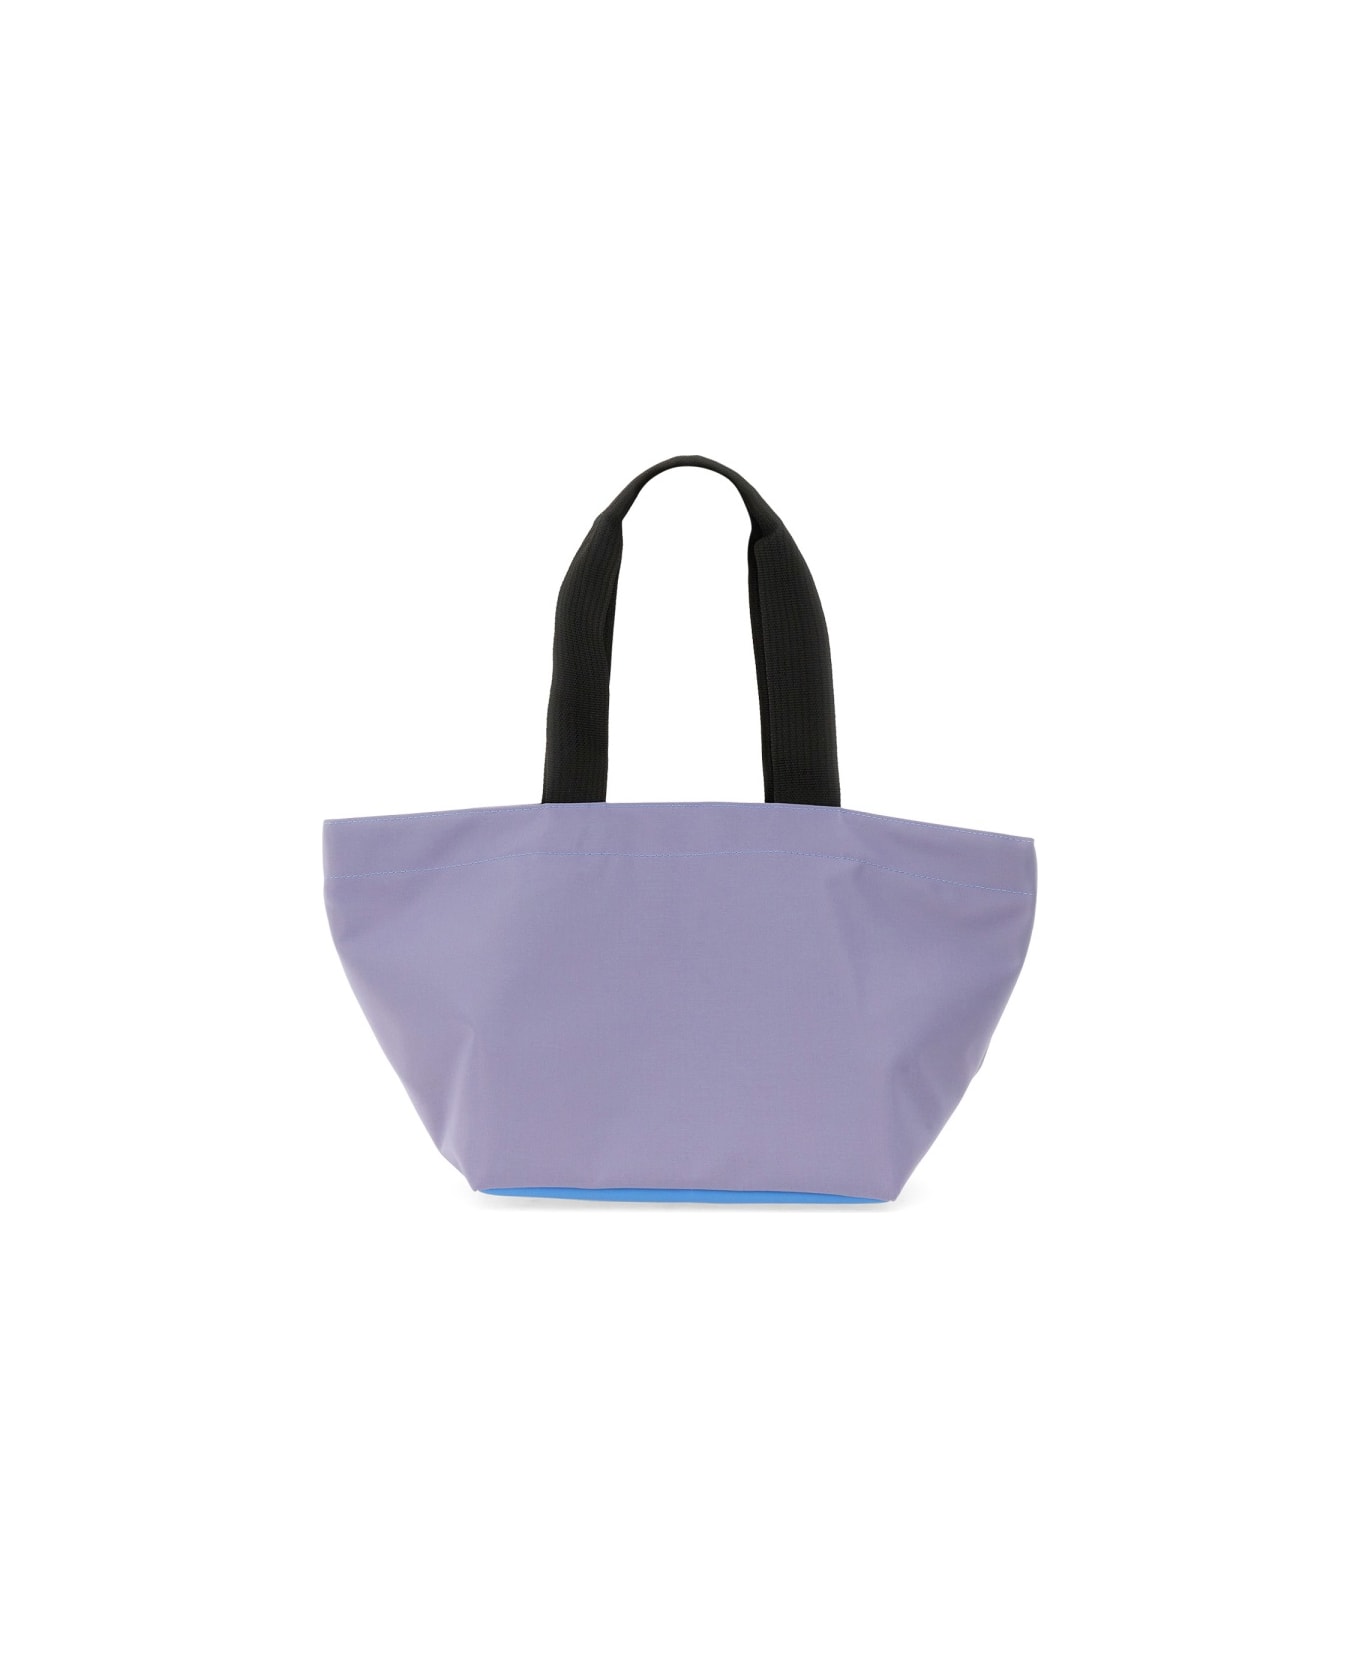 Hervè Chapelier Medium Shopping Bag - PURPLE トートバッグ